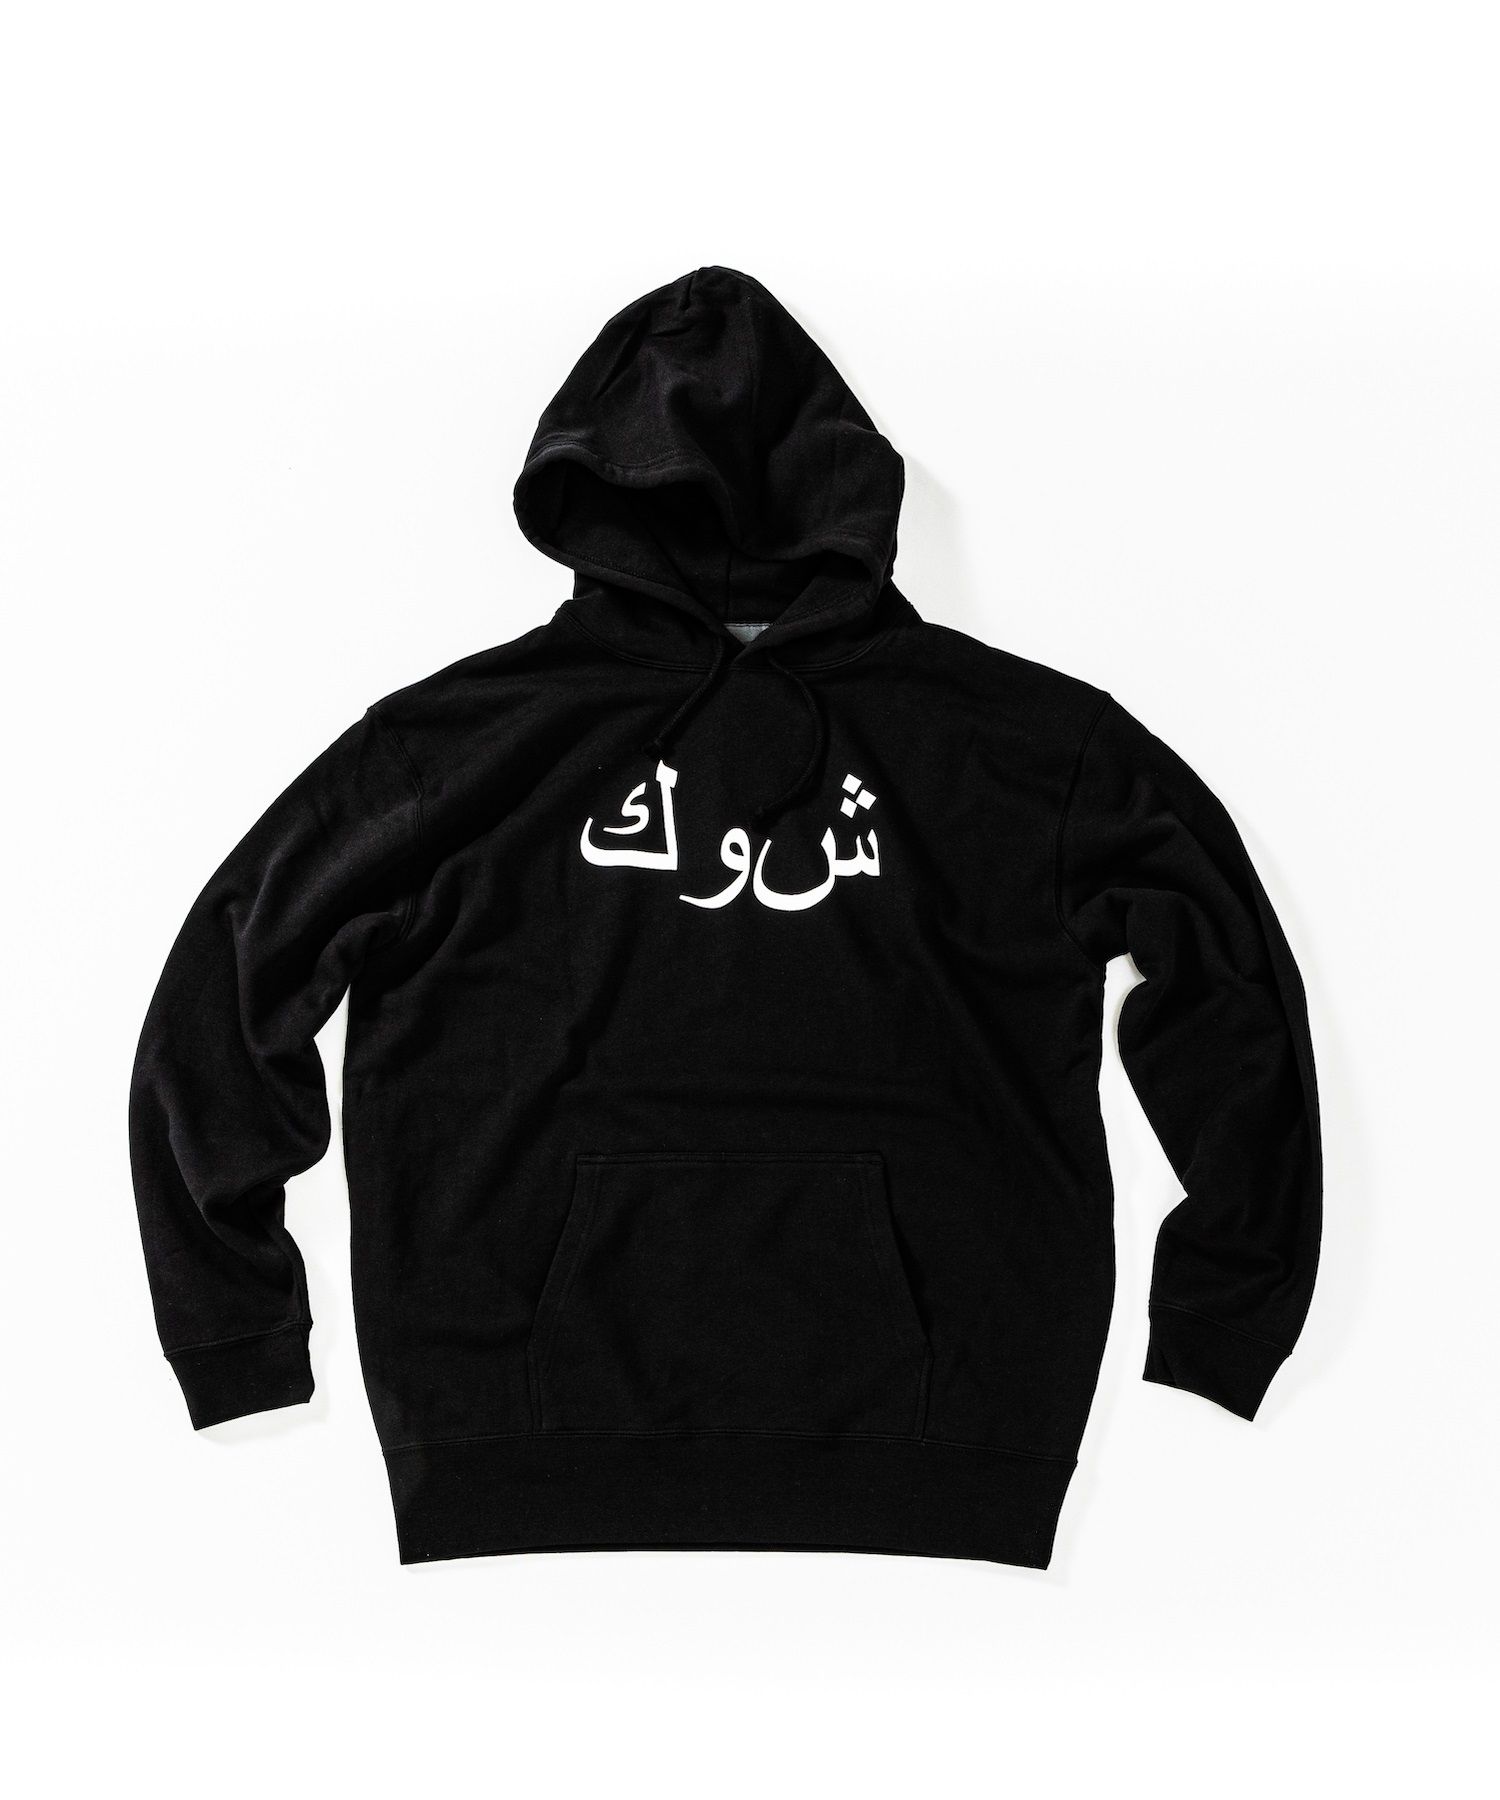 アラビックロゴパーカー / Arabic Logo Hooded Sweatshirt / BLACK [HJ2102] - S